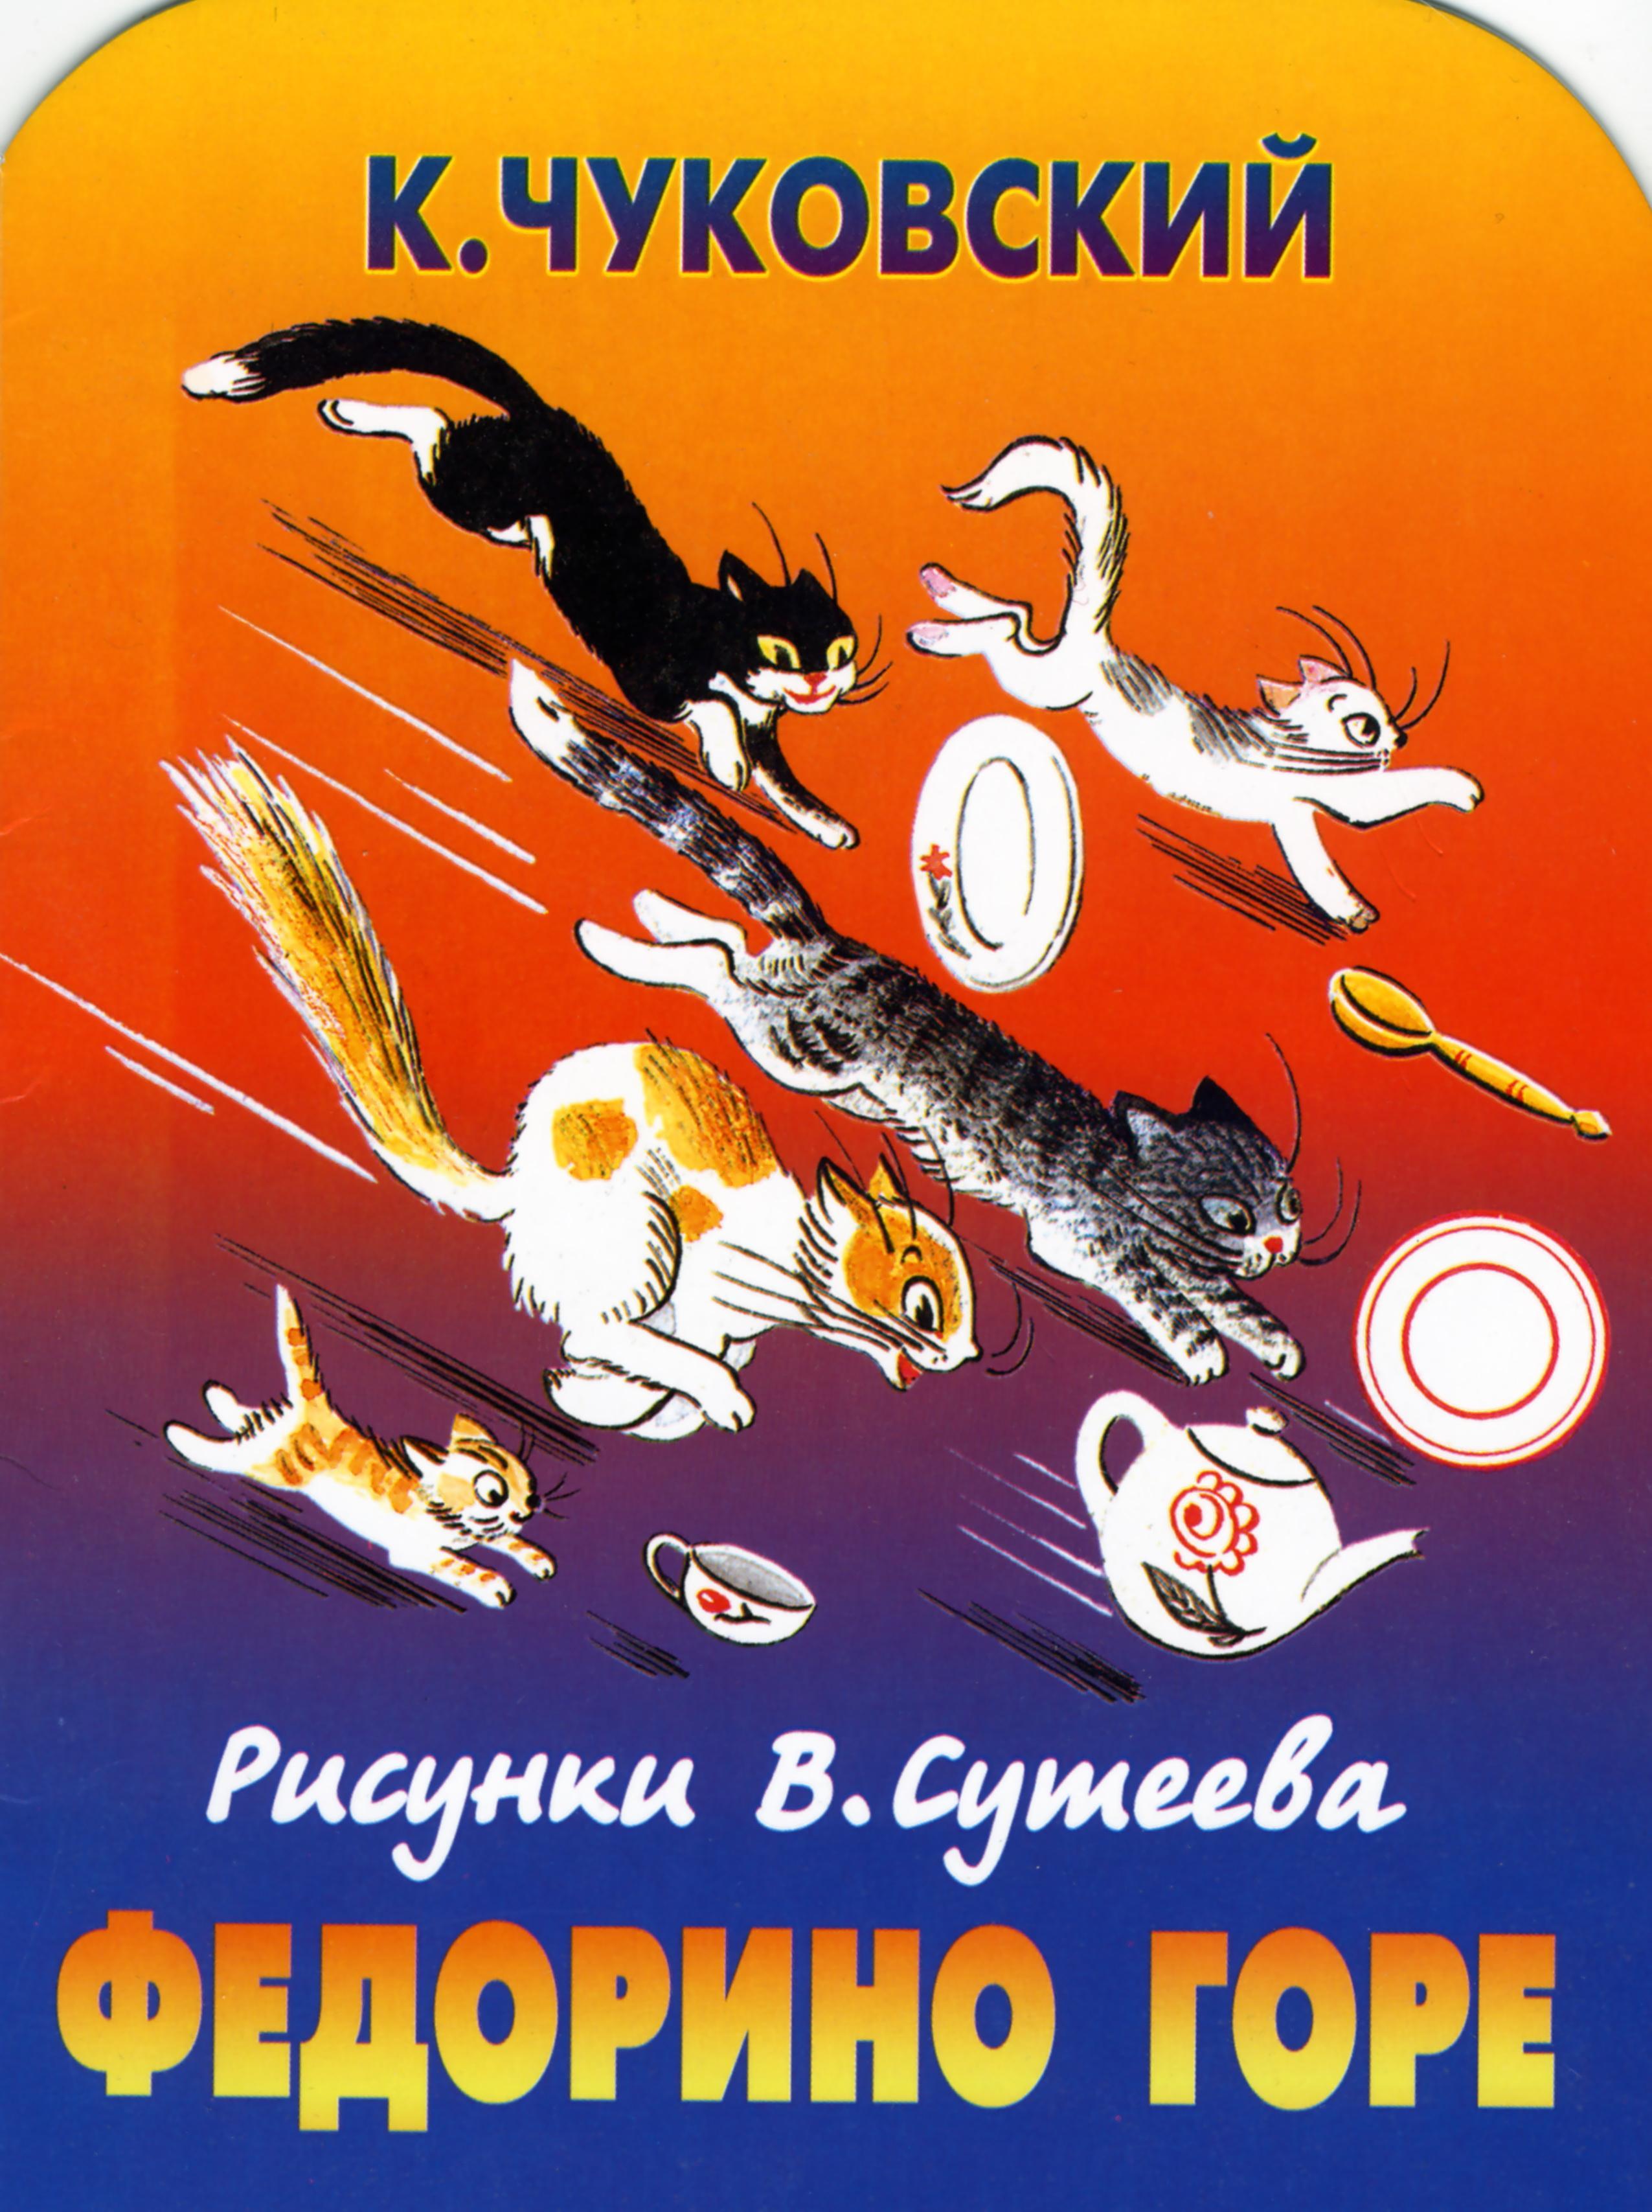 Чуковский Федорино горе иллюстрации Сутеева